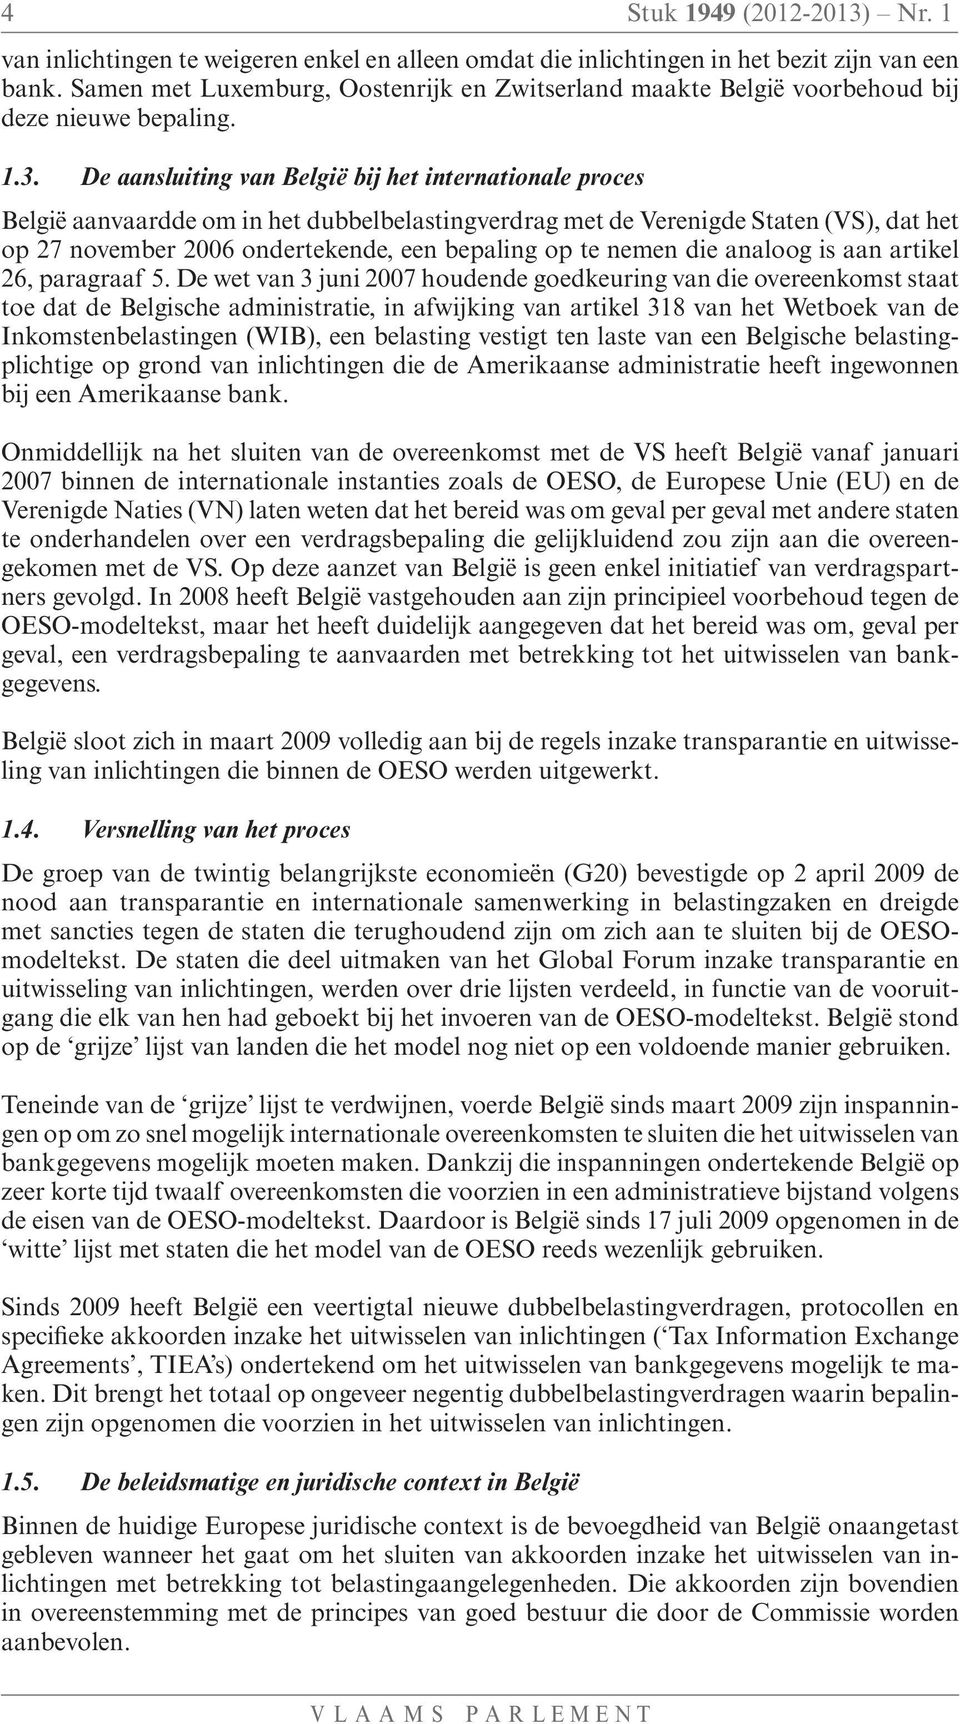 De aansluiting van België bij het internationale proces België aanvaardde om in het dubbelbelastingverdrag met de Verenigde Staten (VS), dat het op 27 november 2006 ondertekende, een bepaling op te